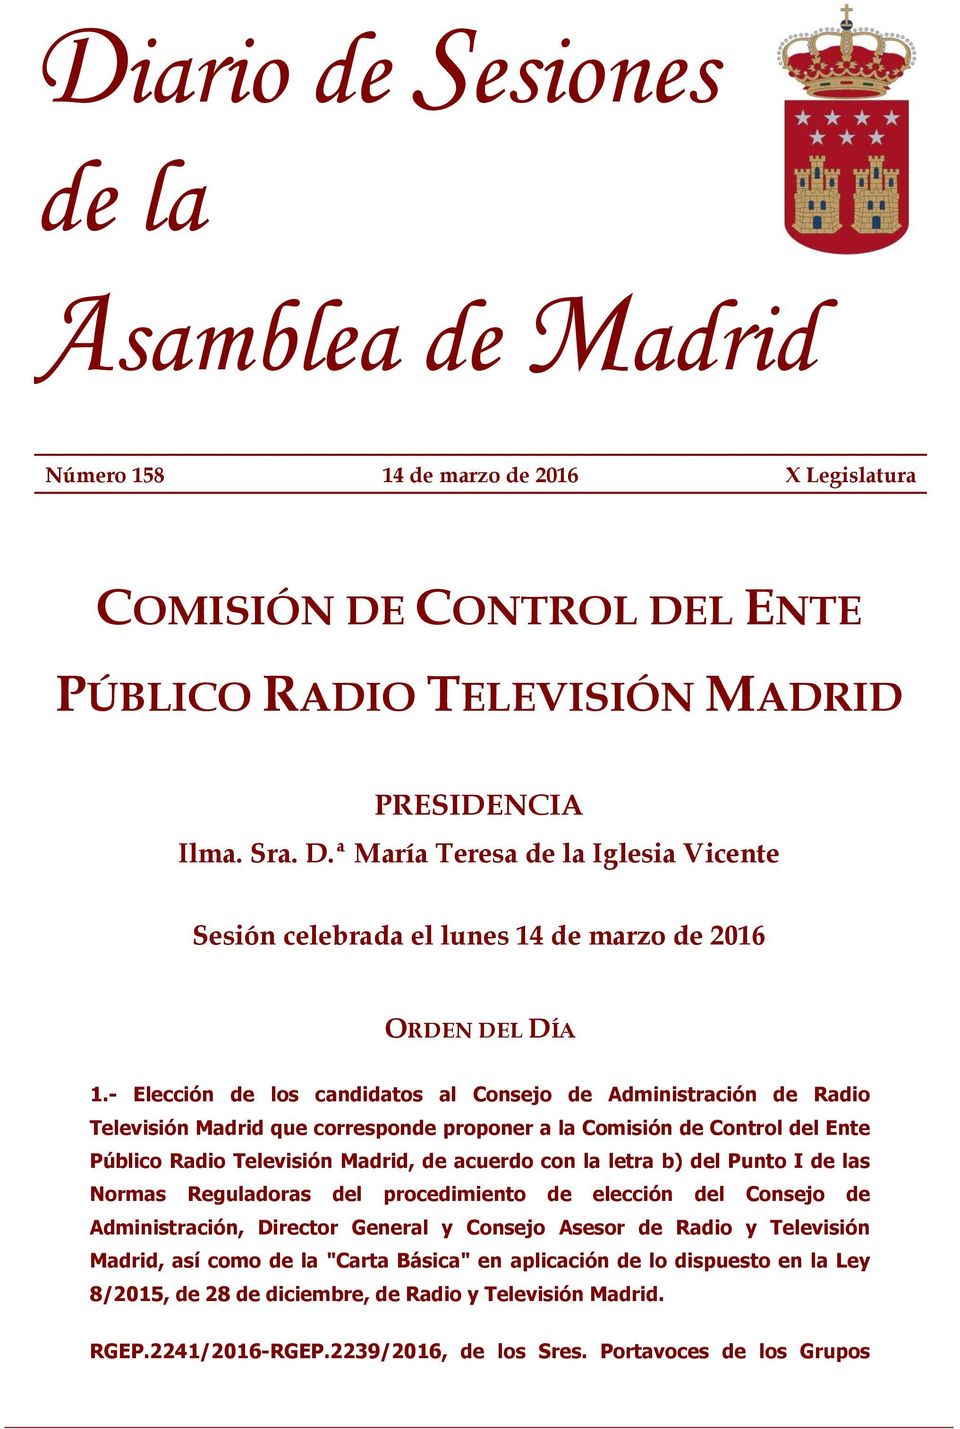 letra b) del Punto I de las Normas Reguladoras del procedimiento de elección del Consejo de Administración, Director General y Consejo Asesor de Radio y Televisión Madrid, así como de la "Carta